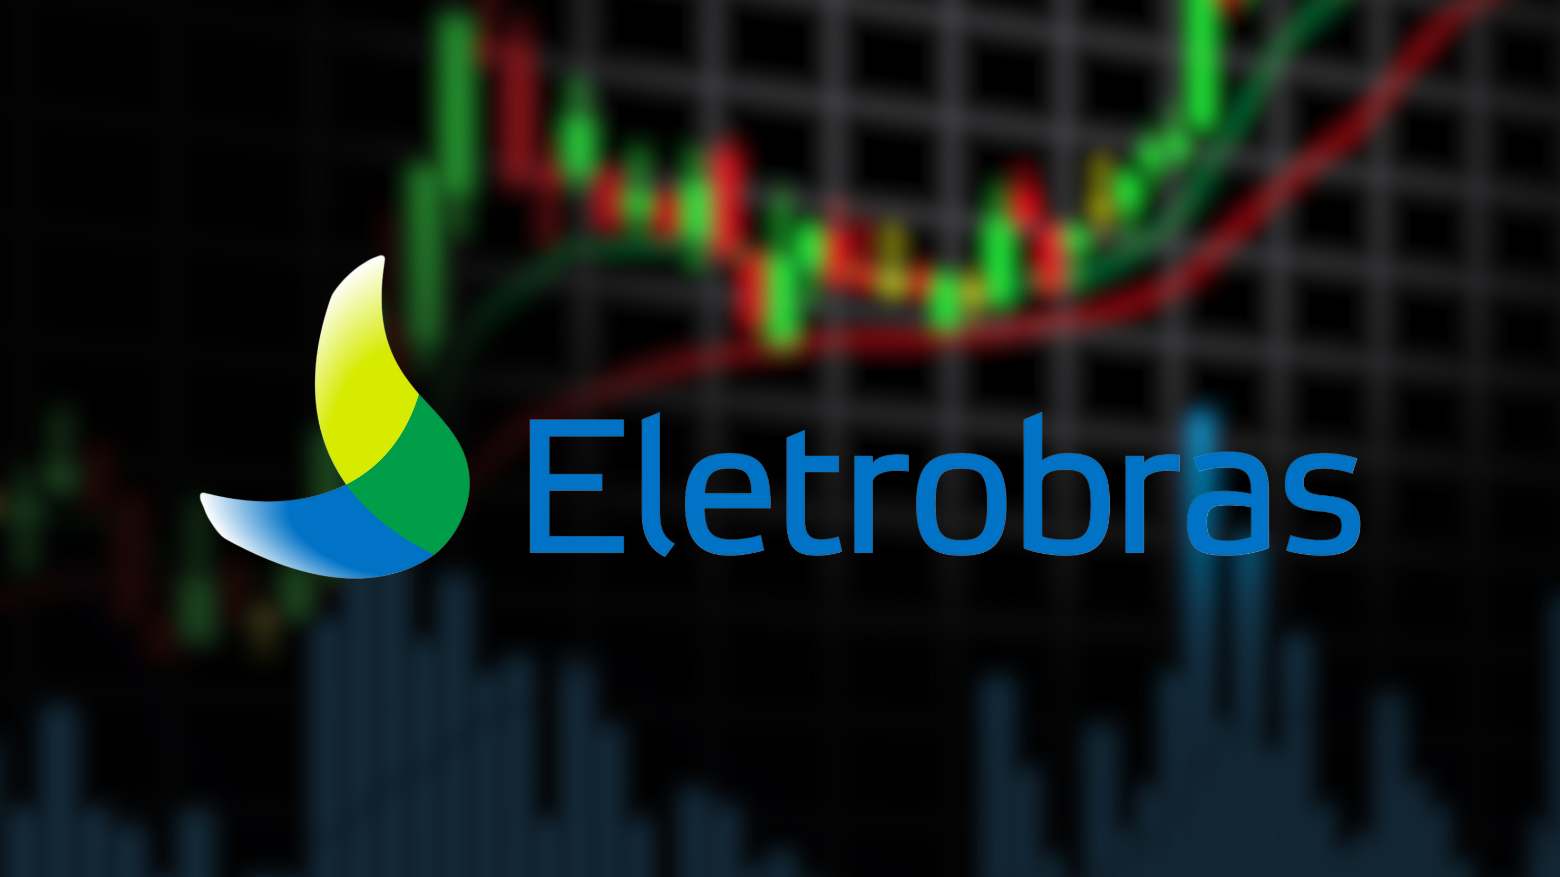 Eletrobras (ELET6) levanta R$ 4,7 bi com venda de termelétricas; vêm mais dividendos para os acionistas? 